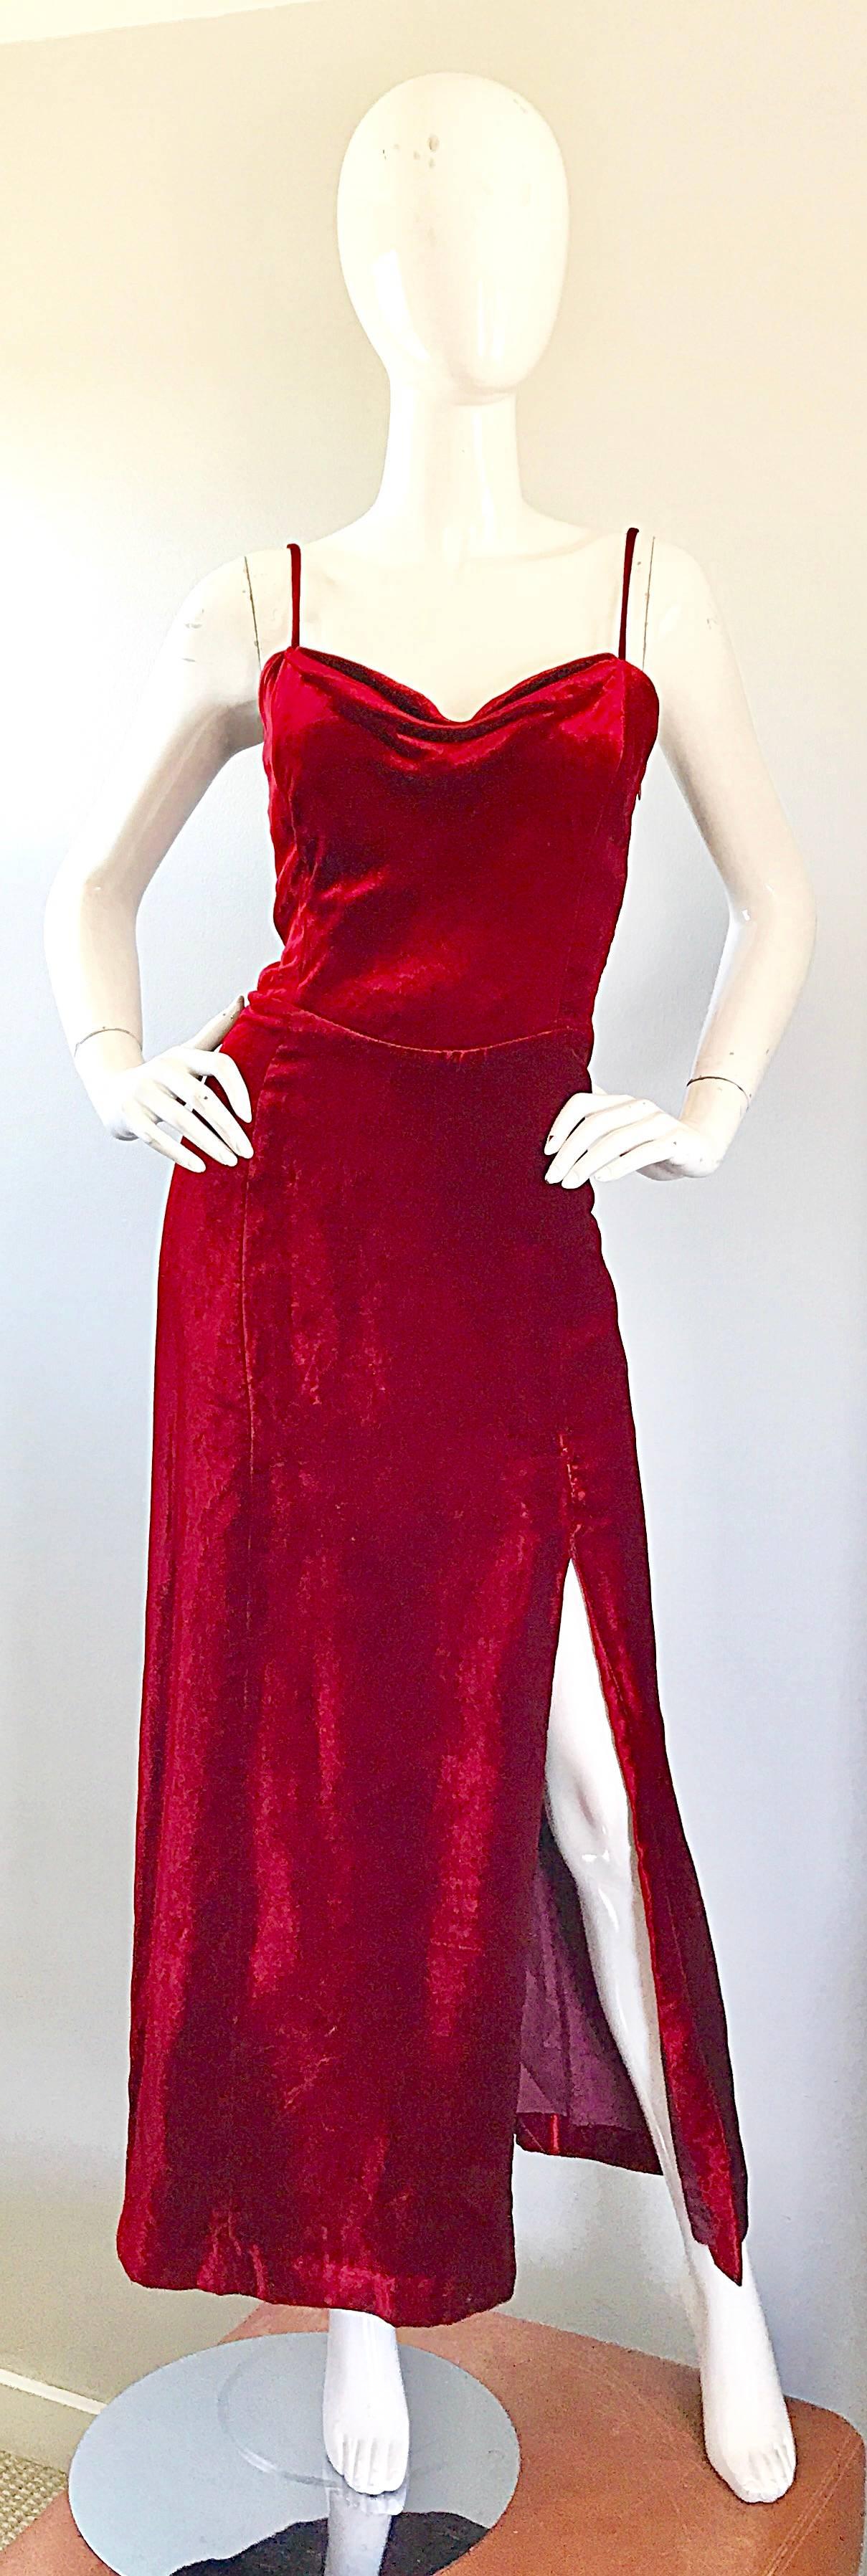 Magnifique robe de soirée en velours de soie rouge cramoisi GIORGIO ARMANI COLLEZIONI des années 1990 ! Qualité Couture, avec une coupe étonnante ! Un poids caché à l'intérieur du buste crée un magnifique drapé au centre du buste et donne à cette